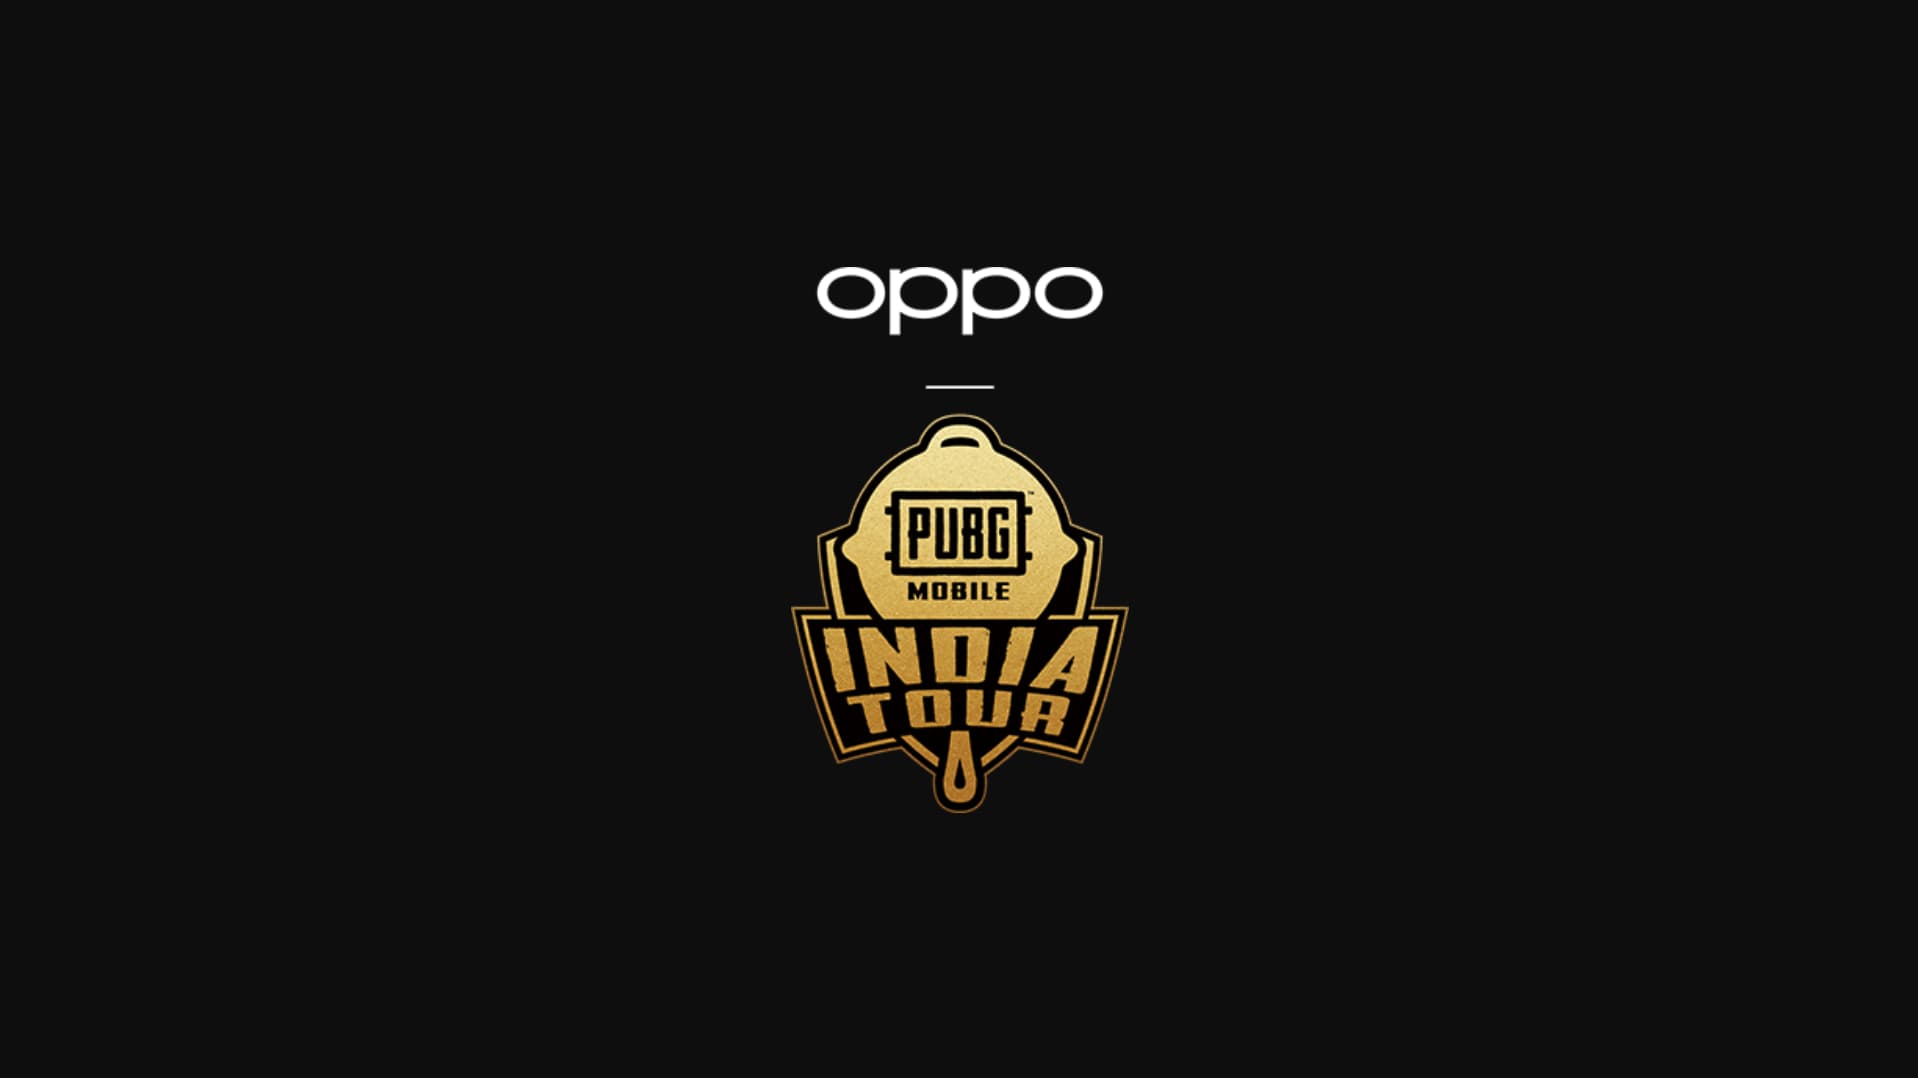 PUBG Mobile India Tournament 2019